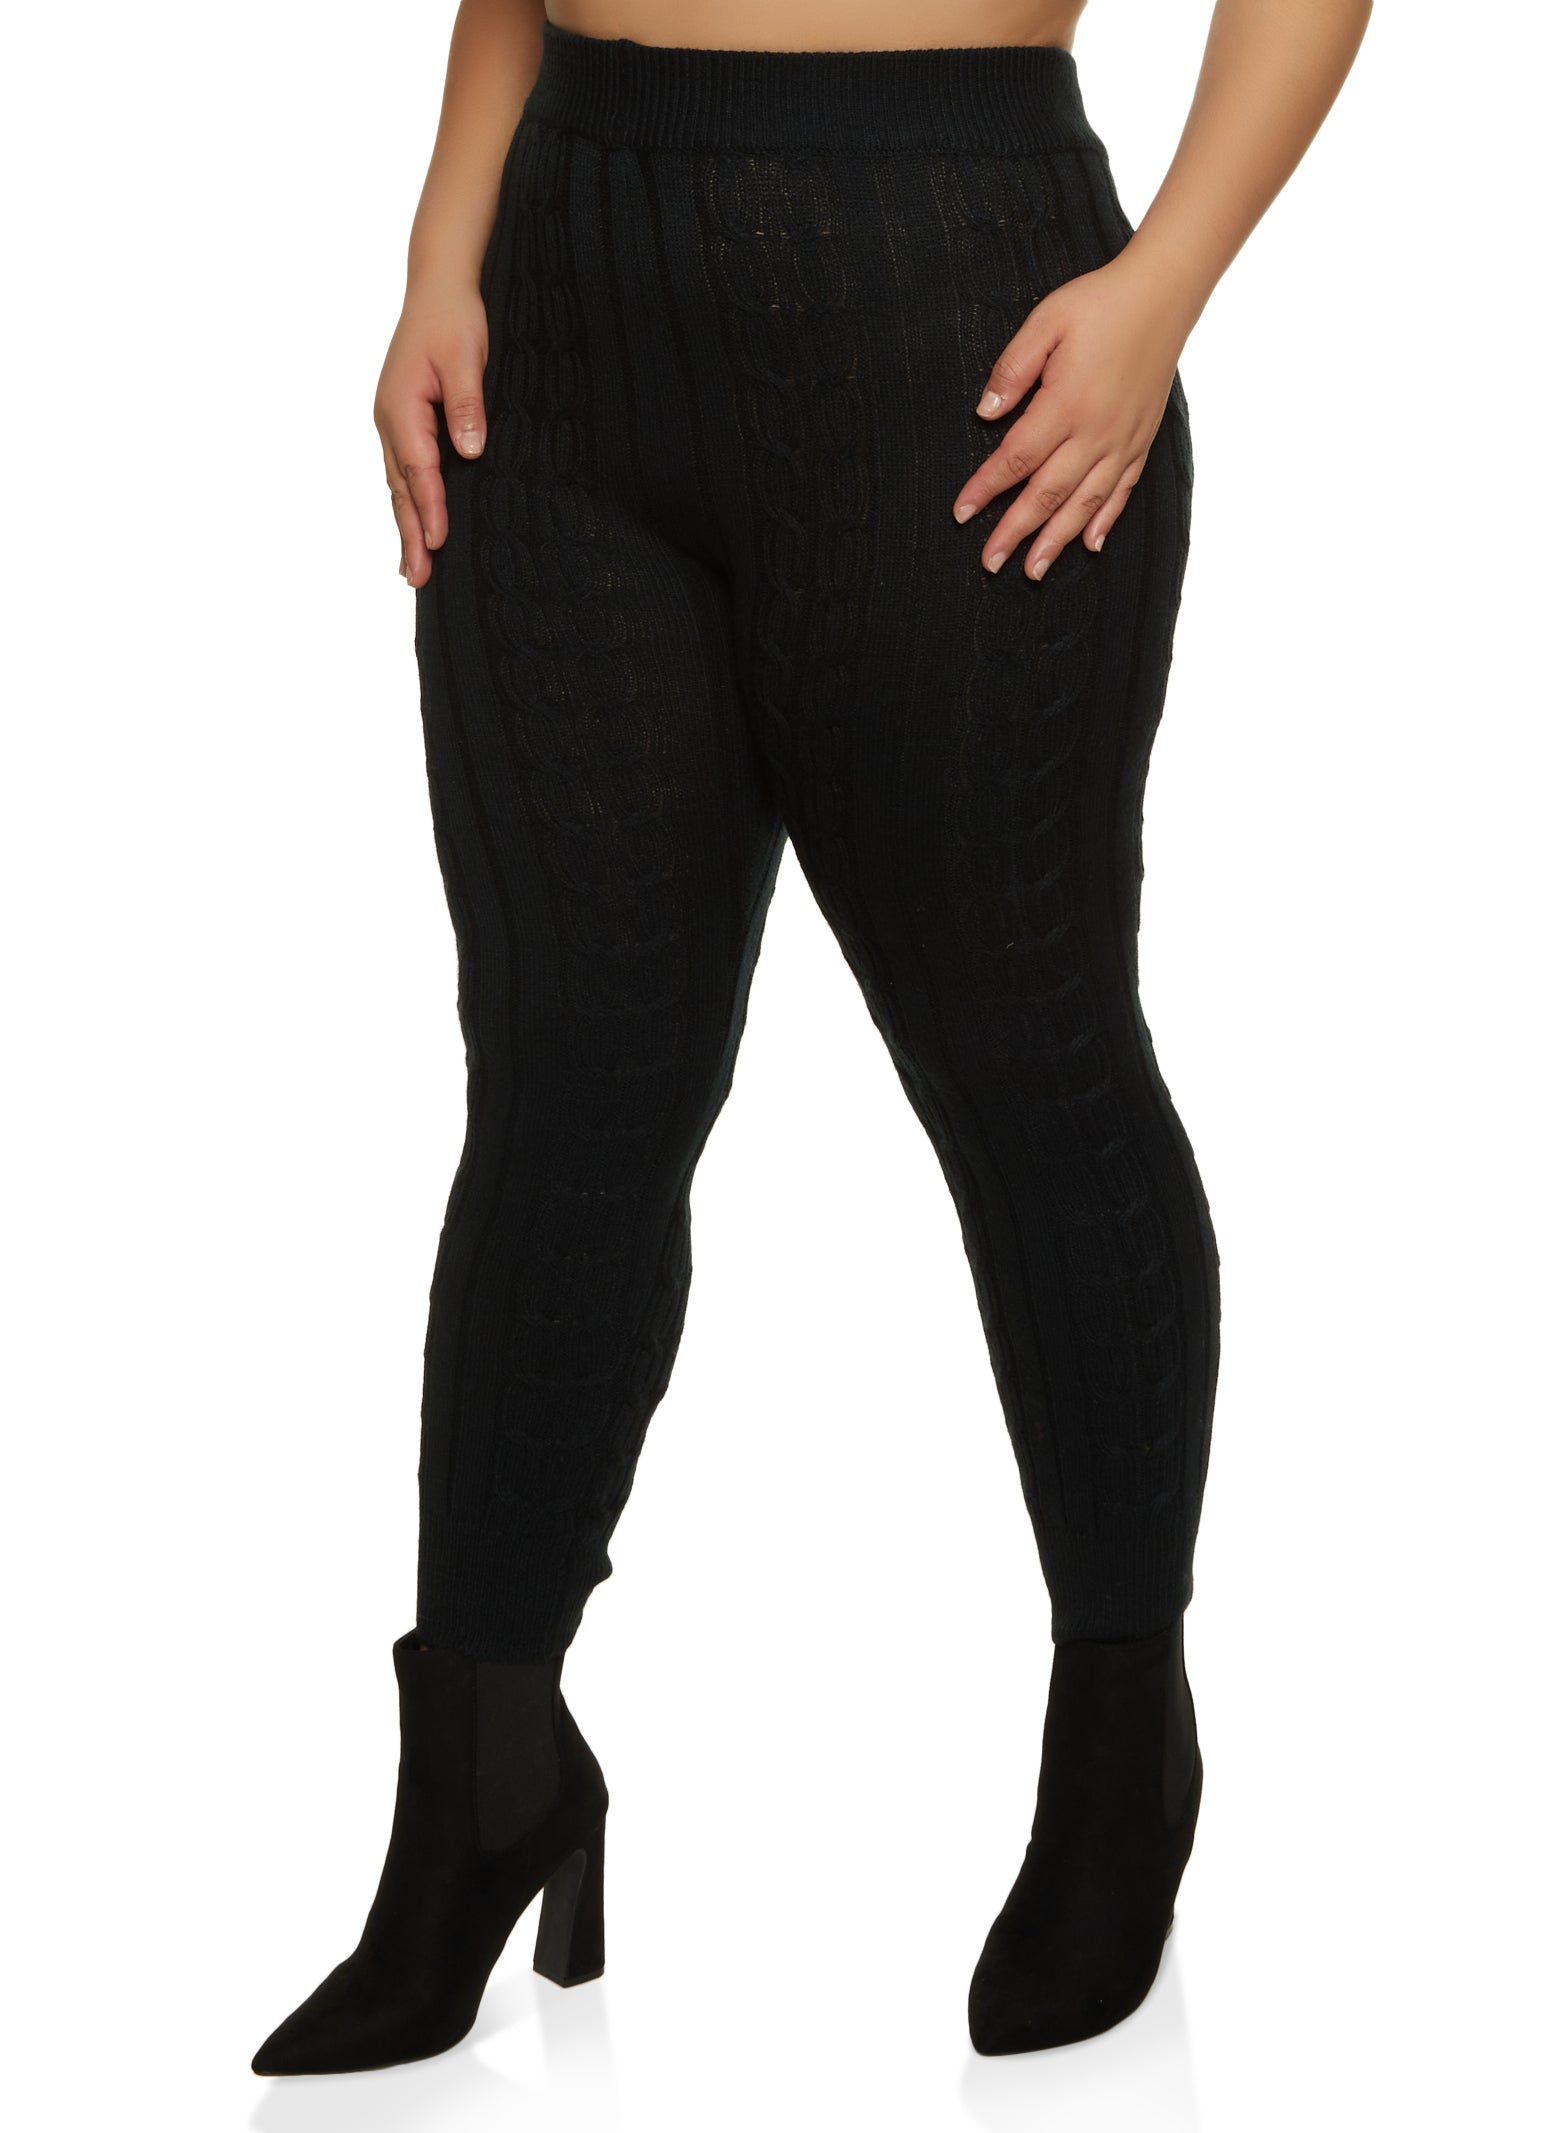 Women's knitted leggings - black